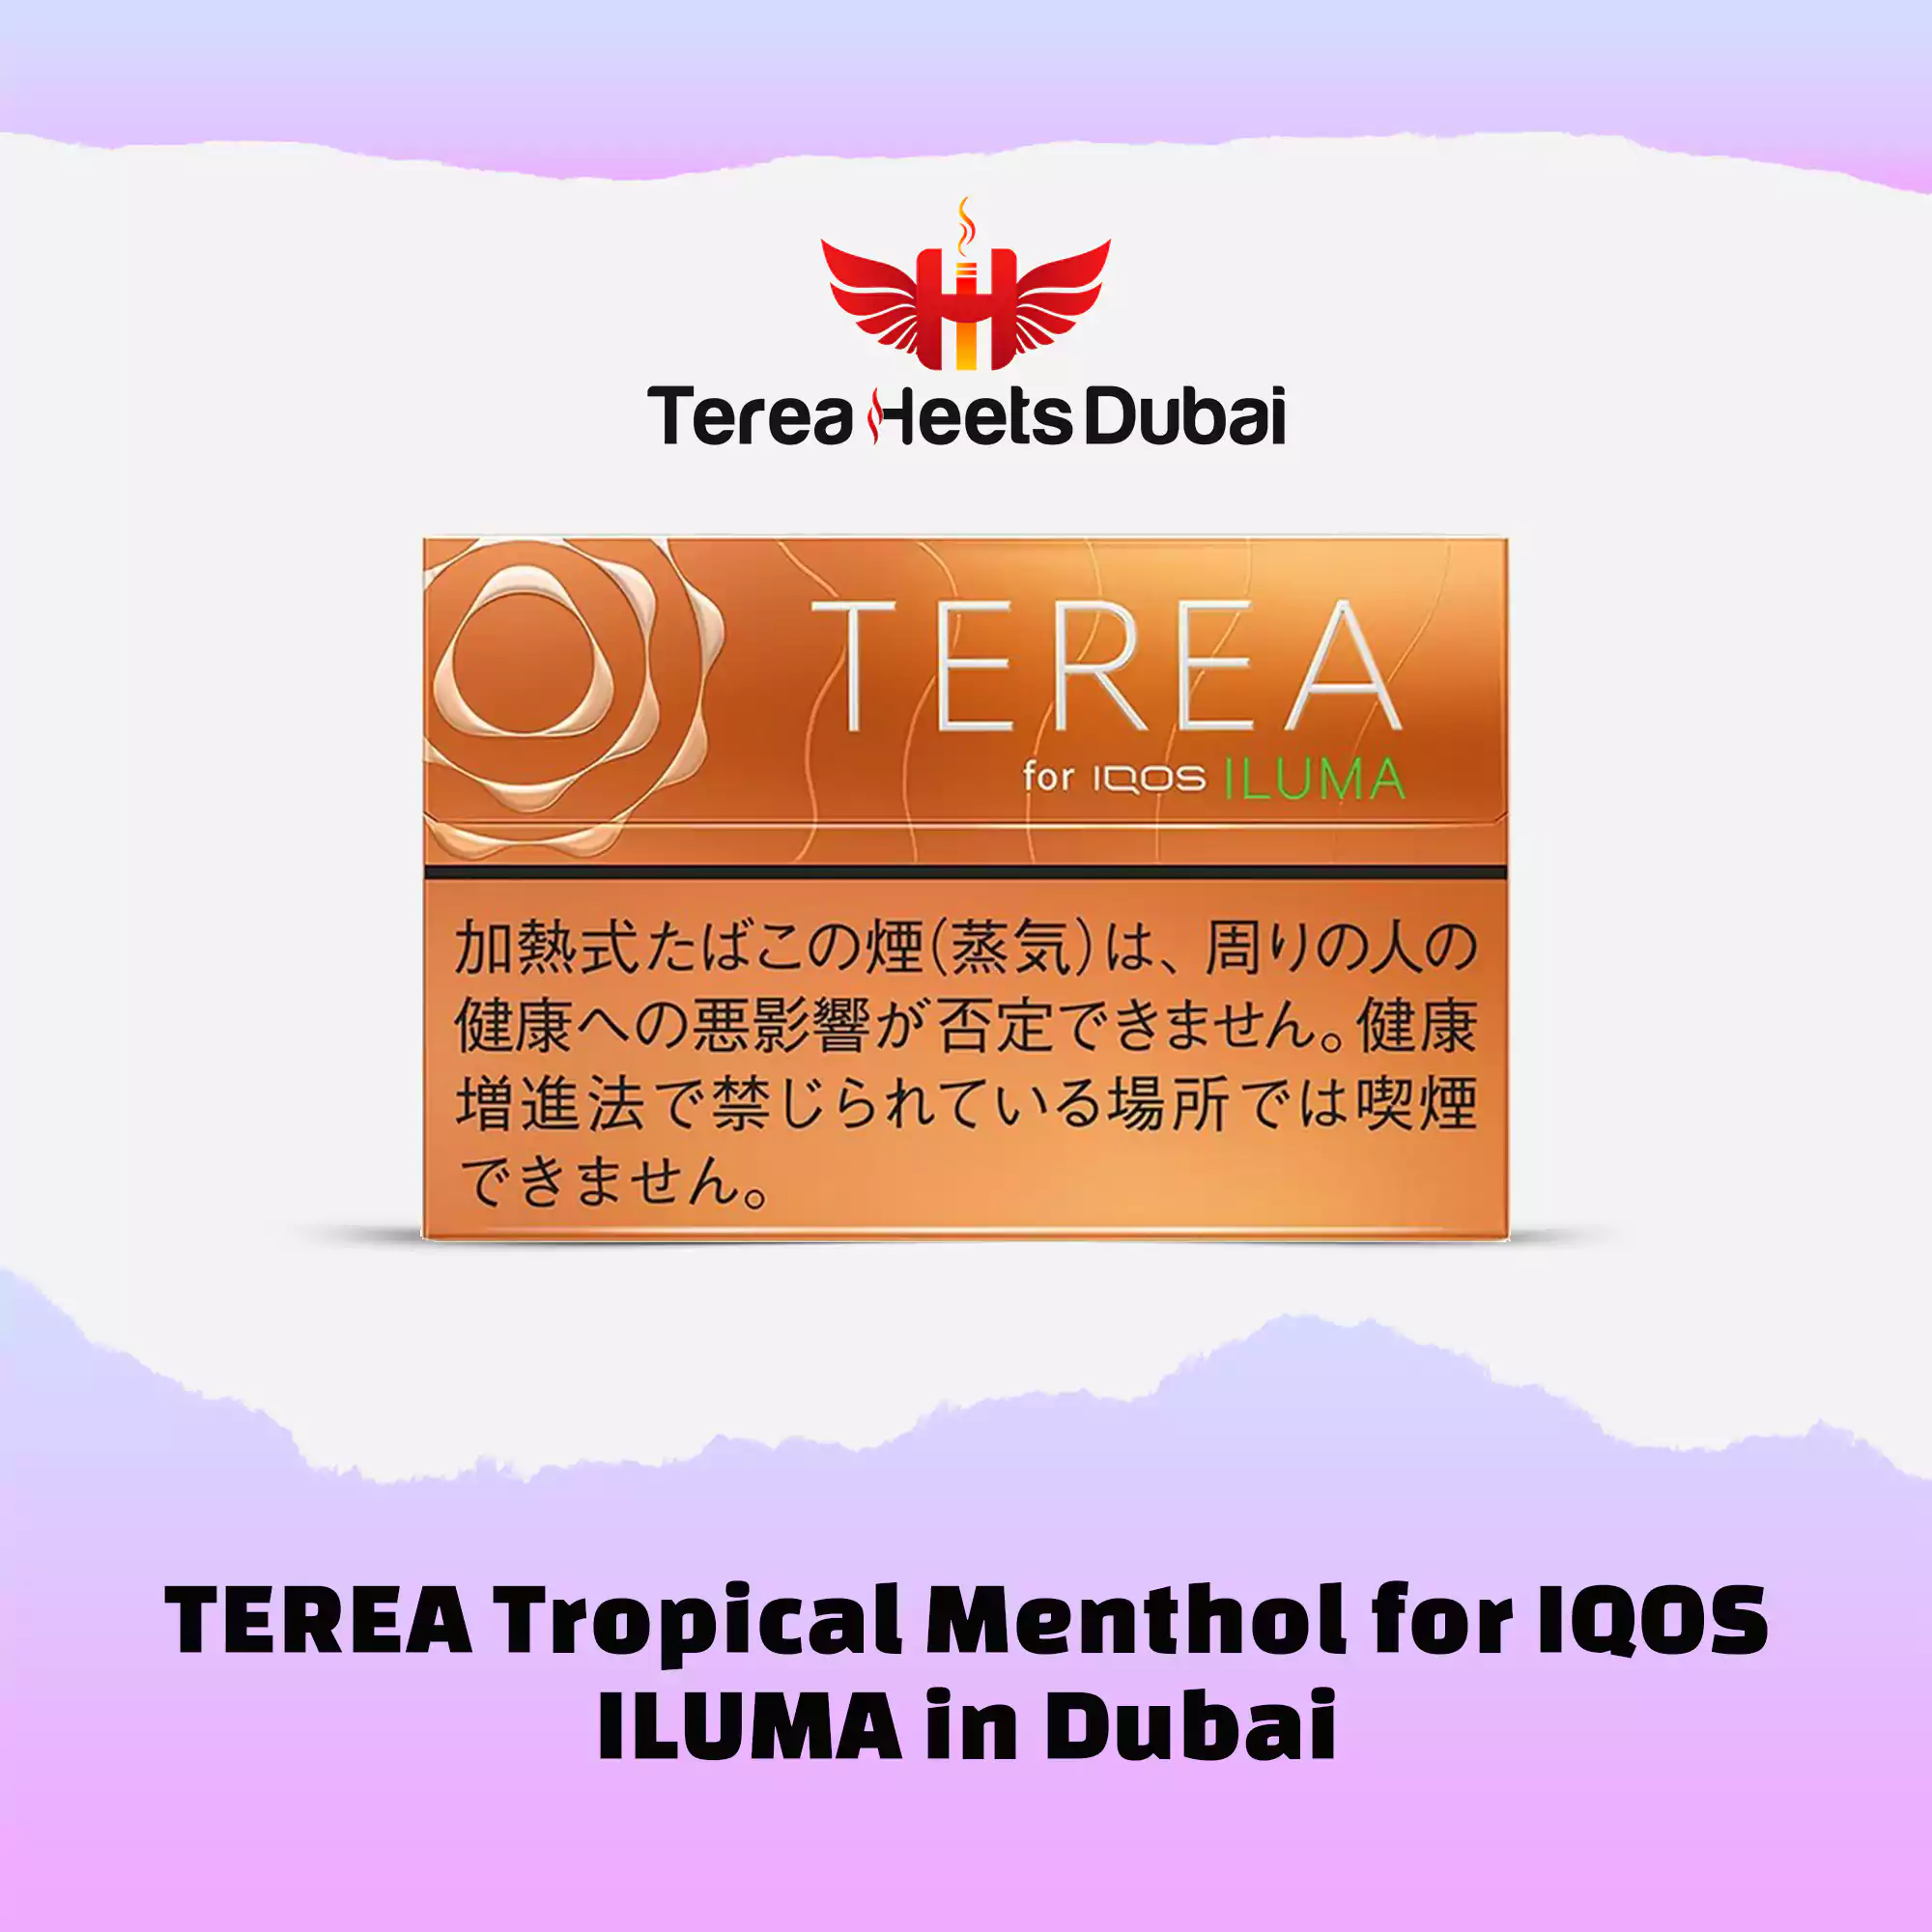 TEREA Tropical Menthol for IQOS ILUMA in Dubai